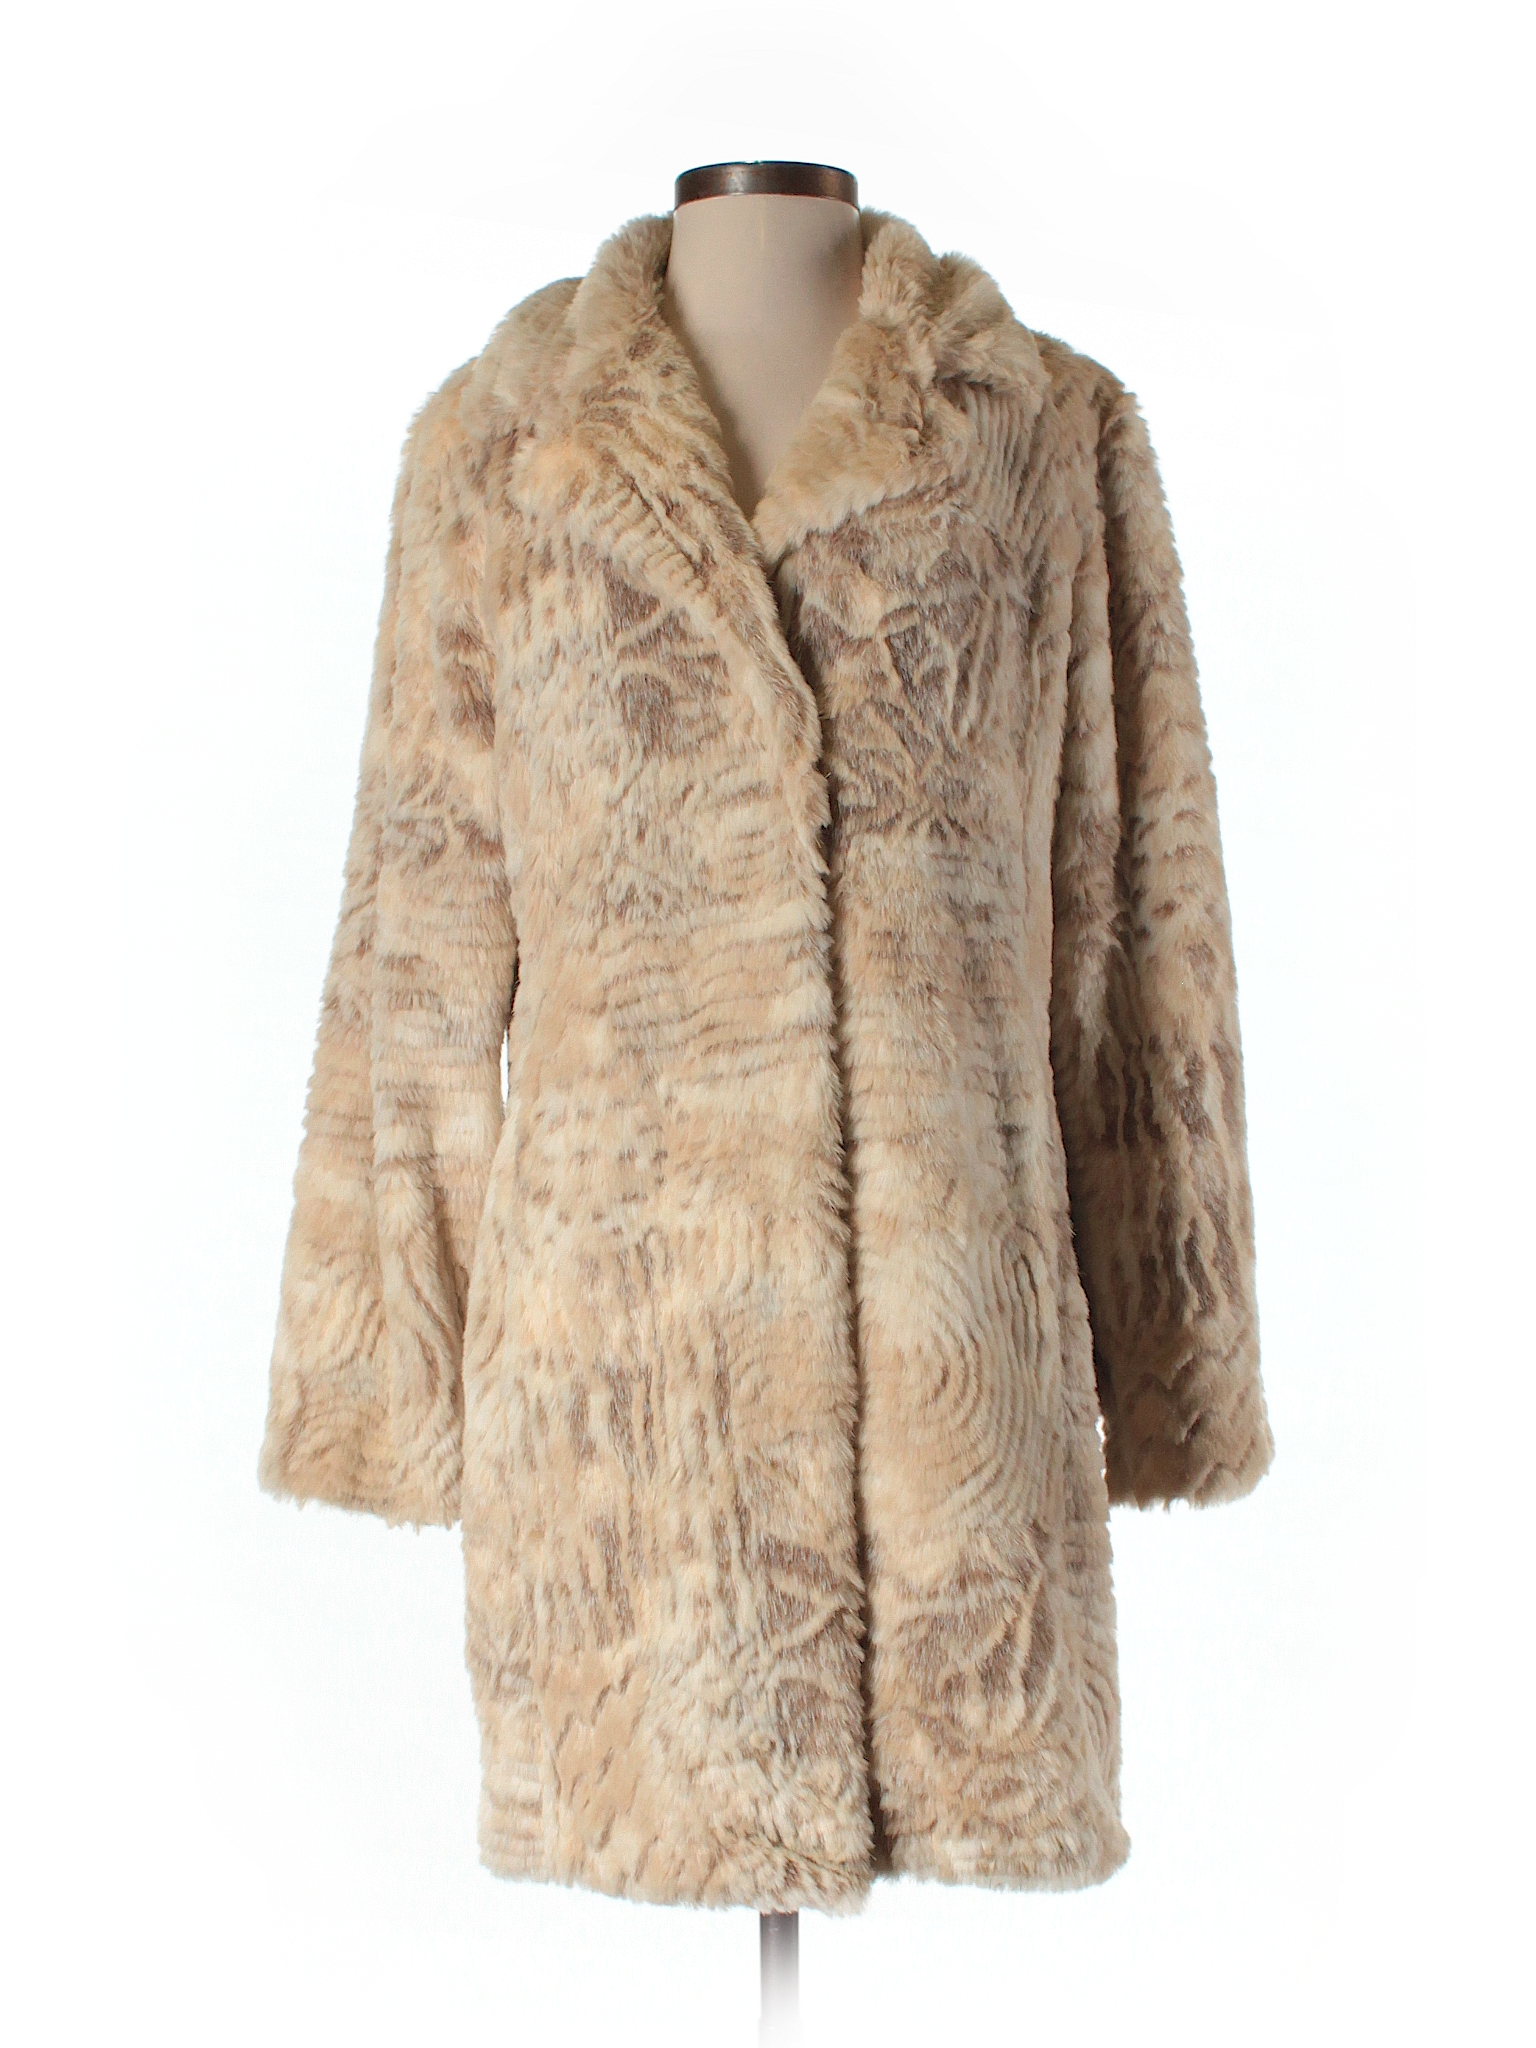 Kristen Blake Women's Ladies' Faux Fur Coat Jacket Size S M L XL NWT